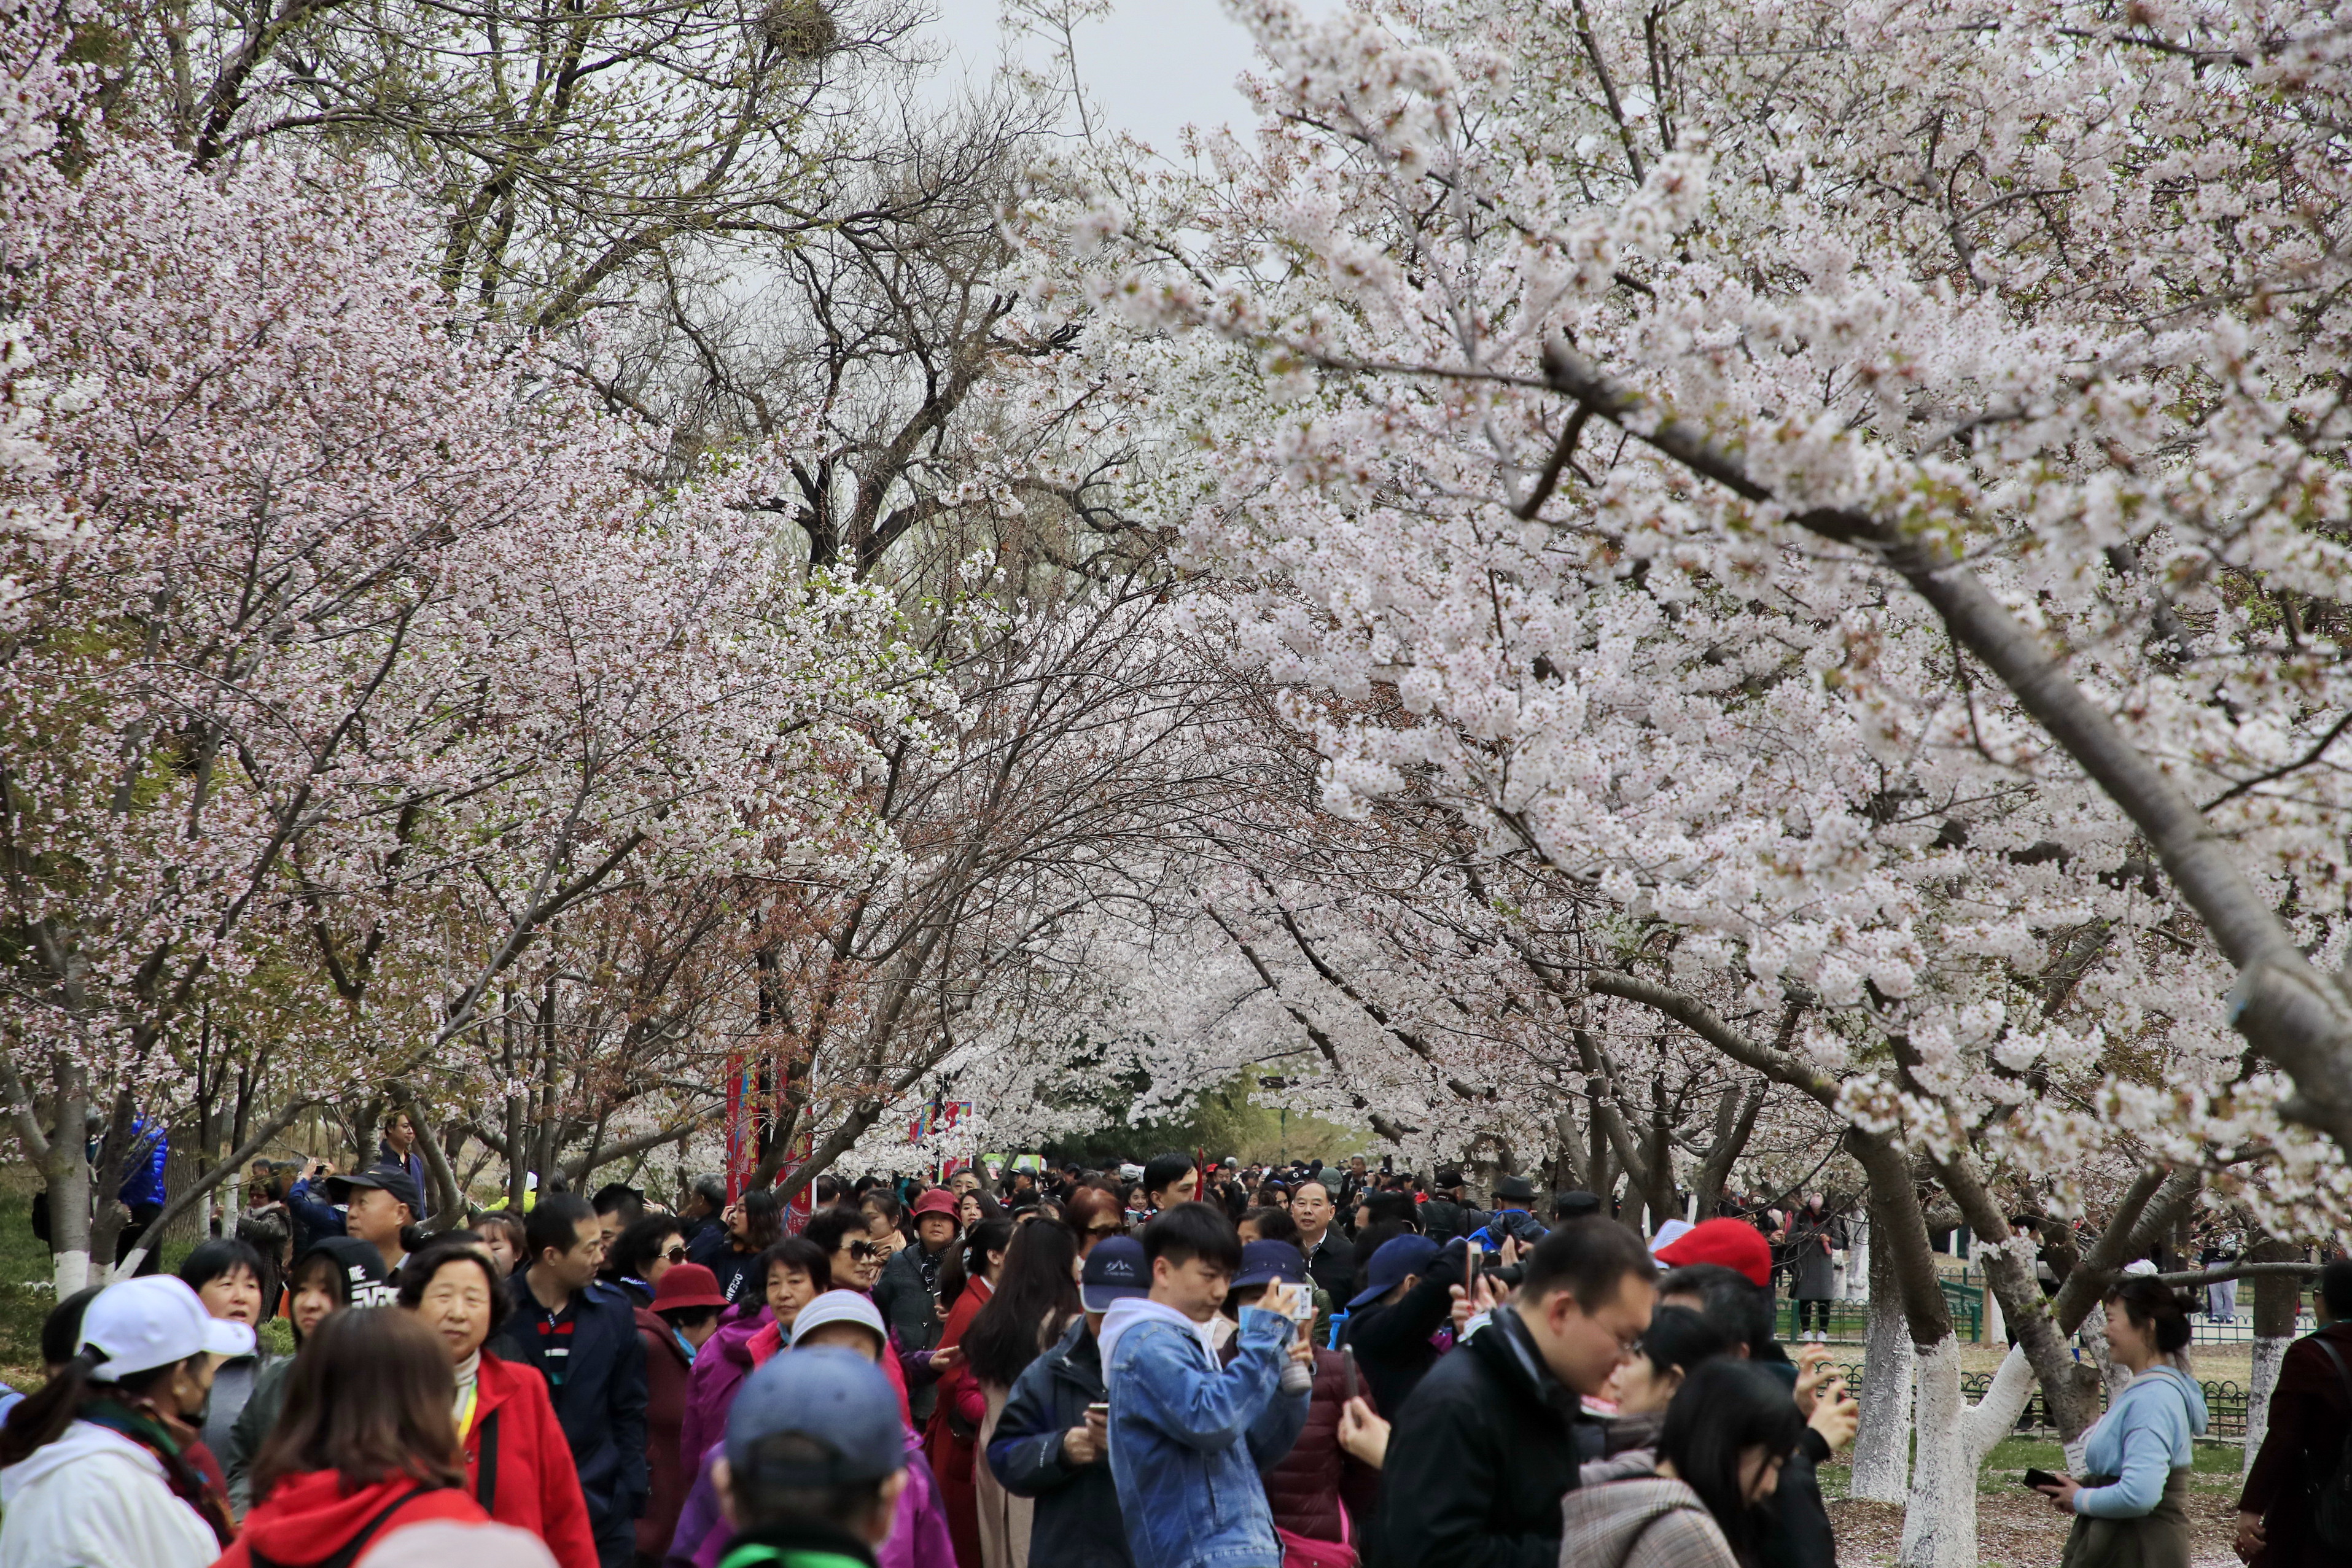 3月29日,游人在北京玉渊潭公园欣赏樱花.新华社发(刘宪国 摄)